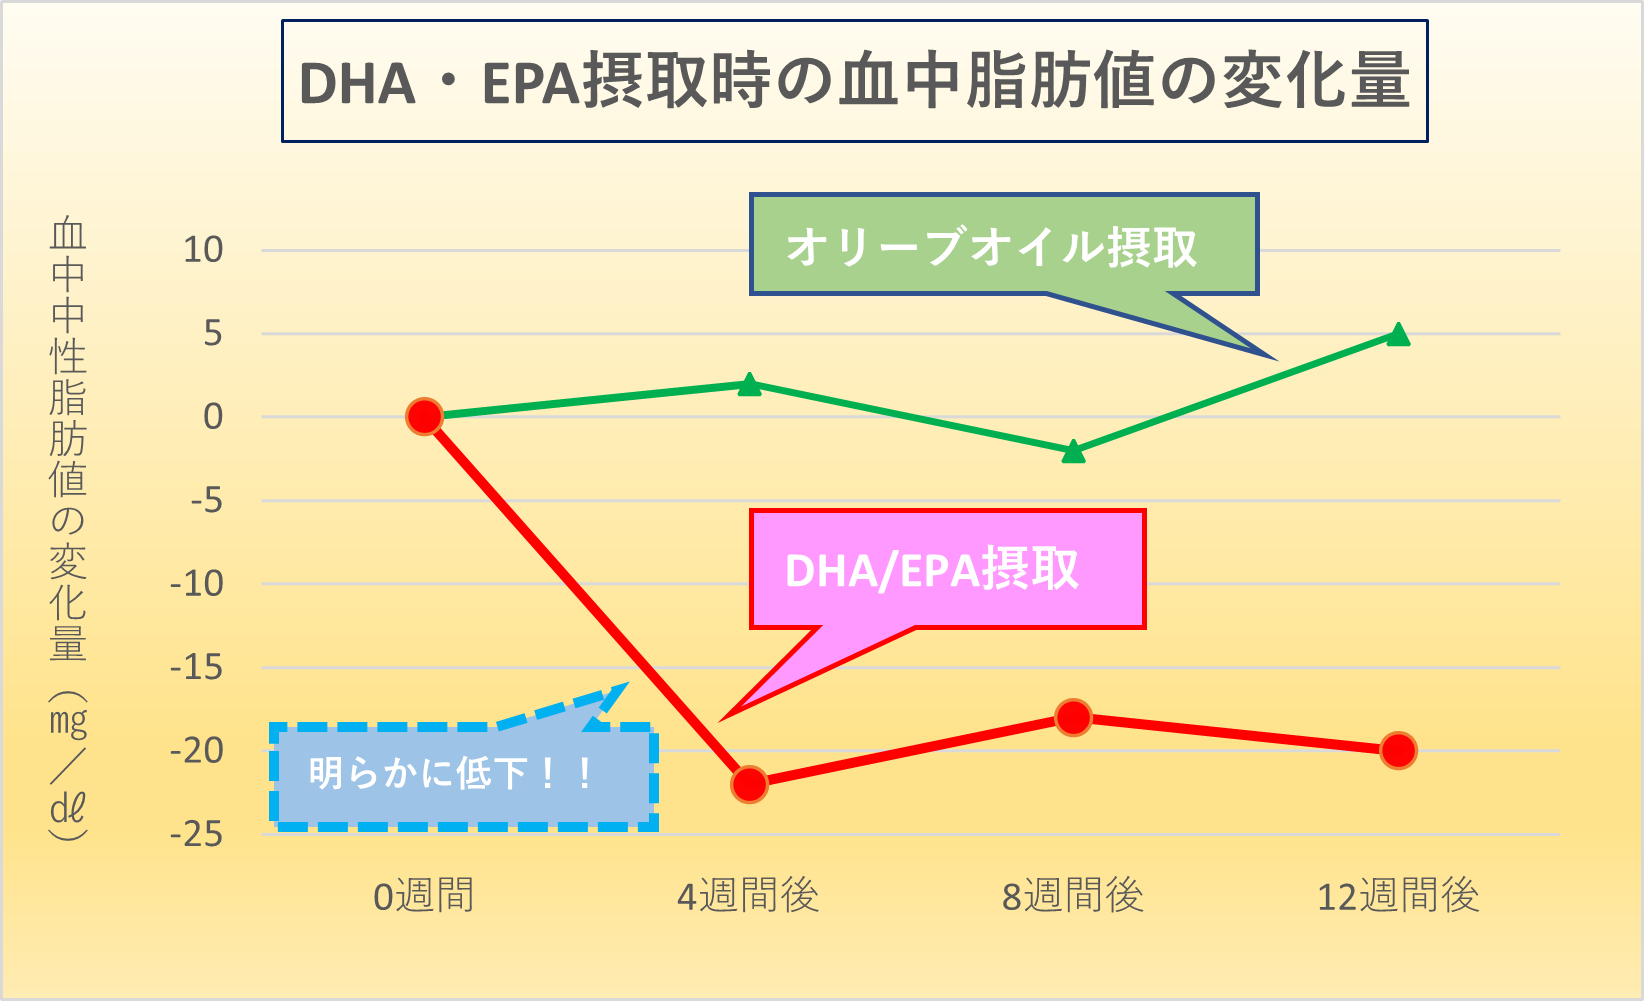 DHA EPA 摂取表